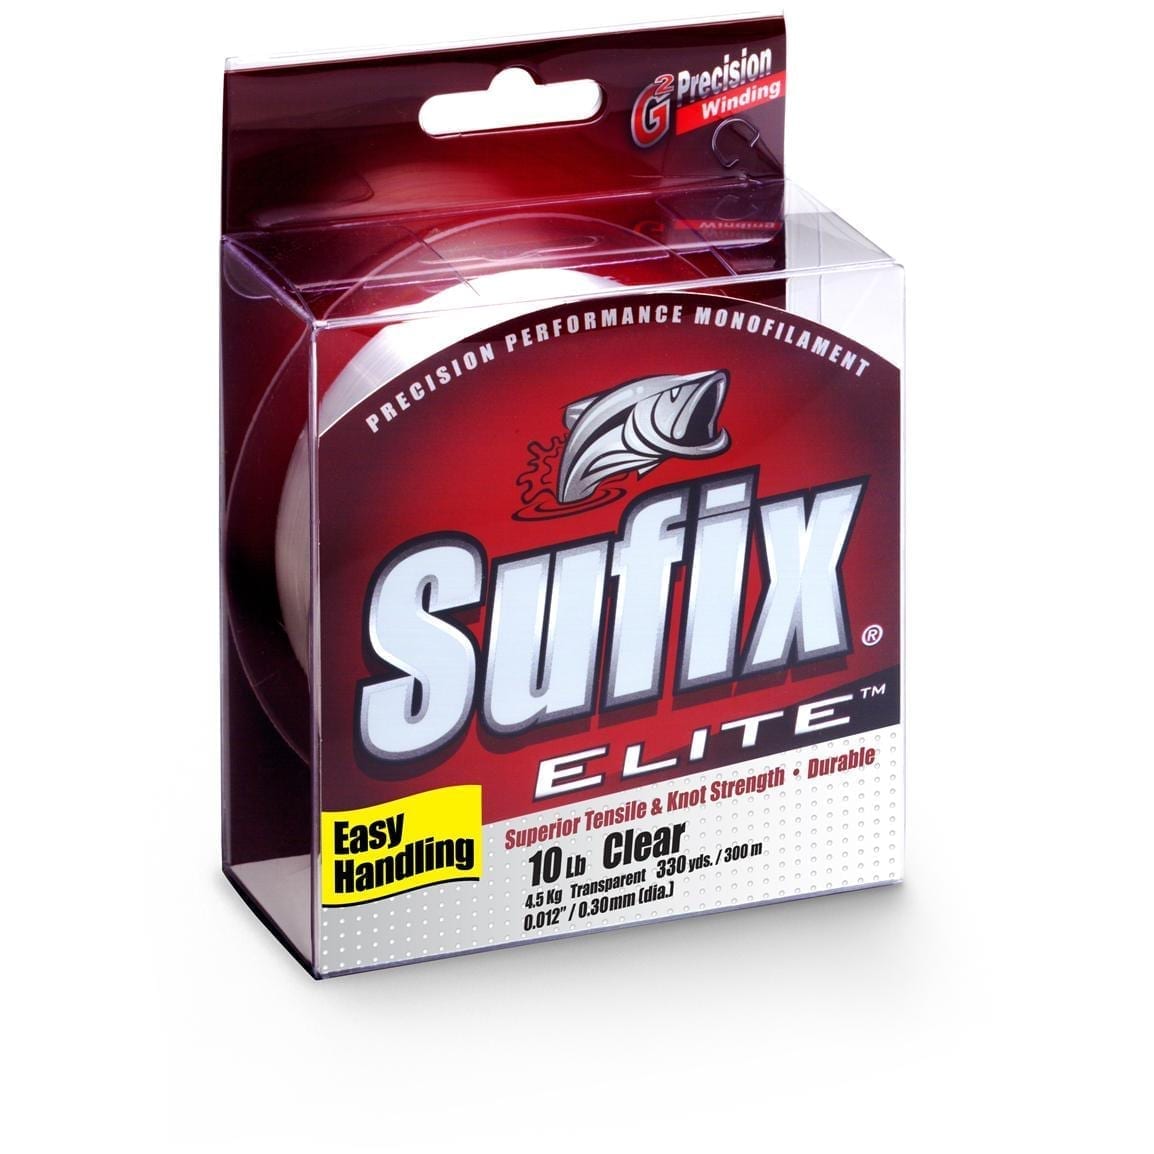 Sufix Elite Clear 6lb test 330yd spool new 6 lb 330 yd Free shipping